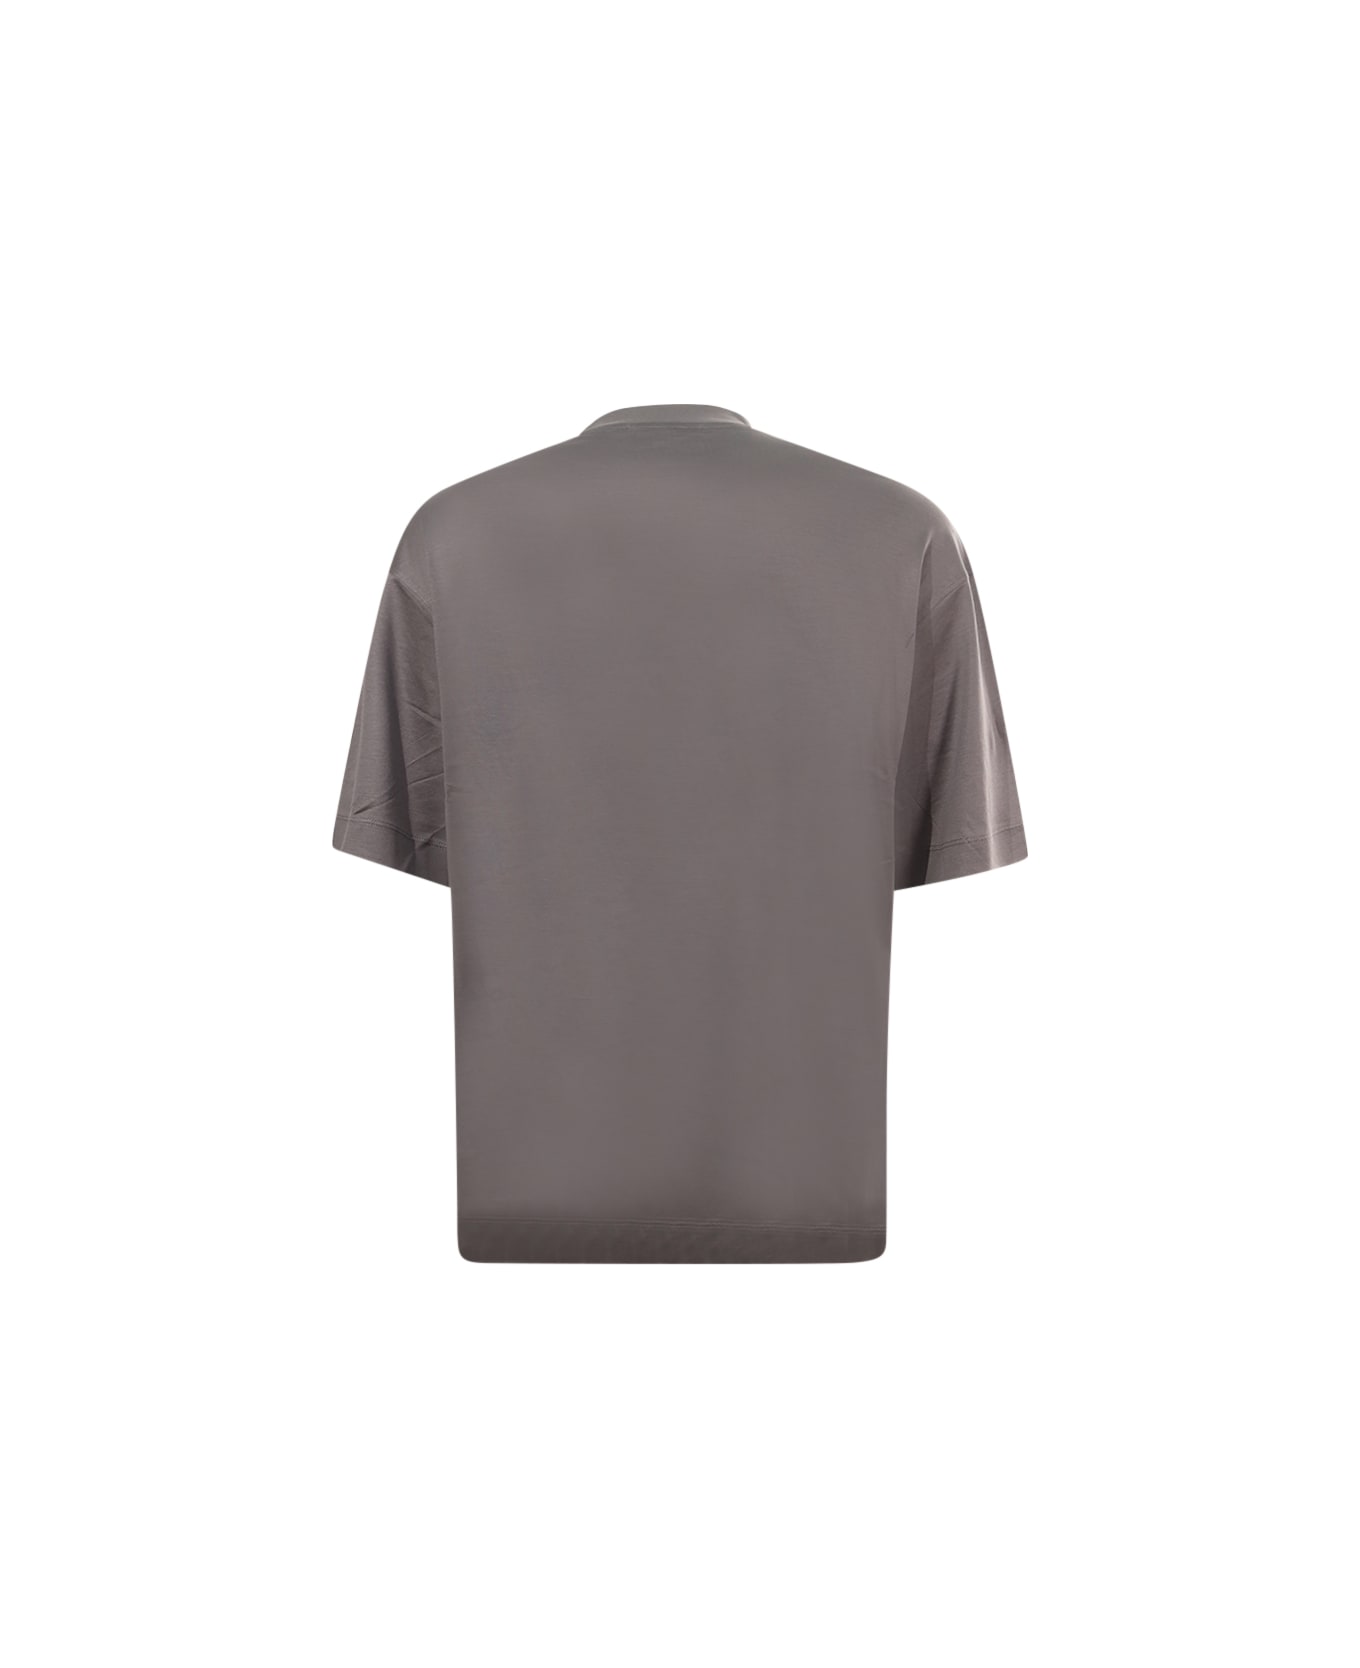 Emporio Armani T-shirt Emporio Armani - Grey シャツ